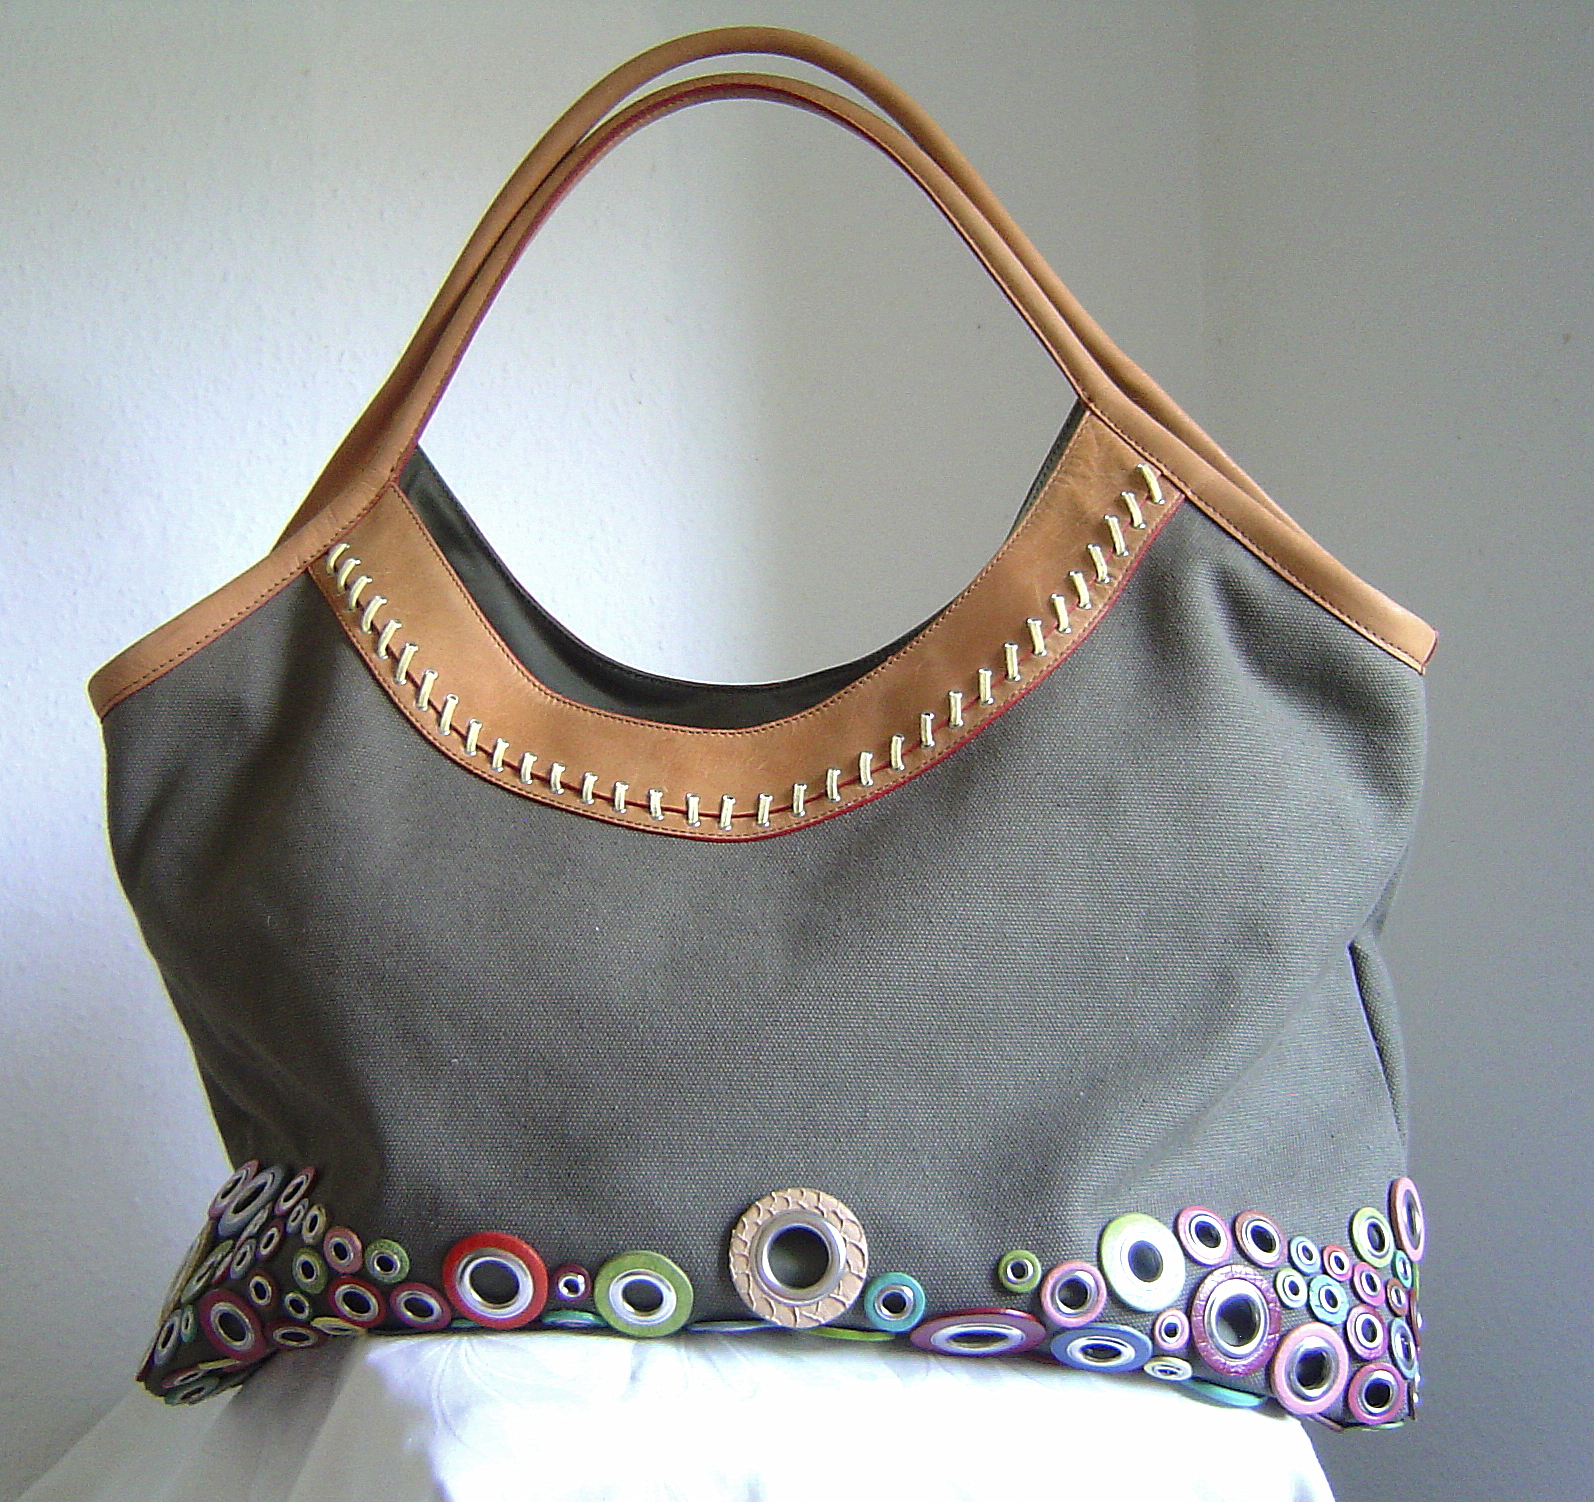 Konplott Handtasche Shopper Bag Couture olive, Farbe olive  multi